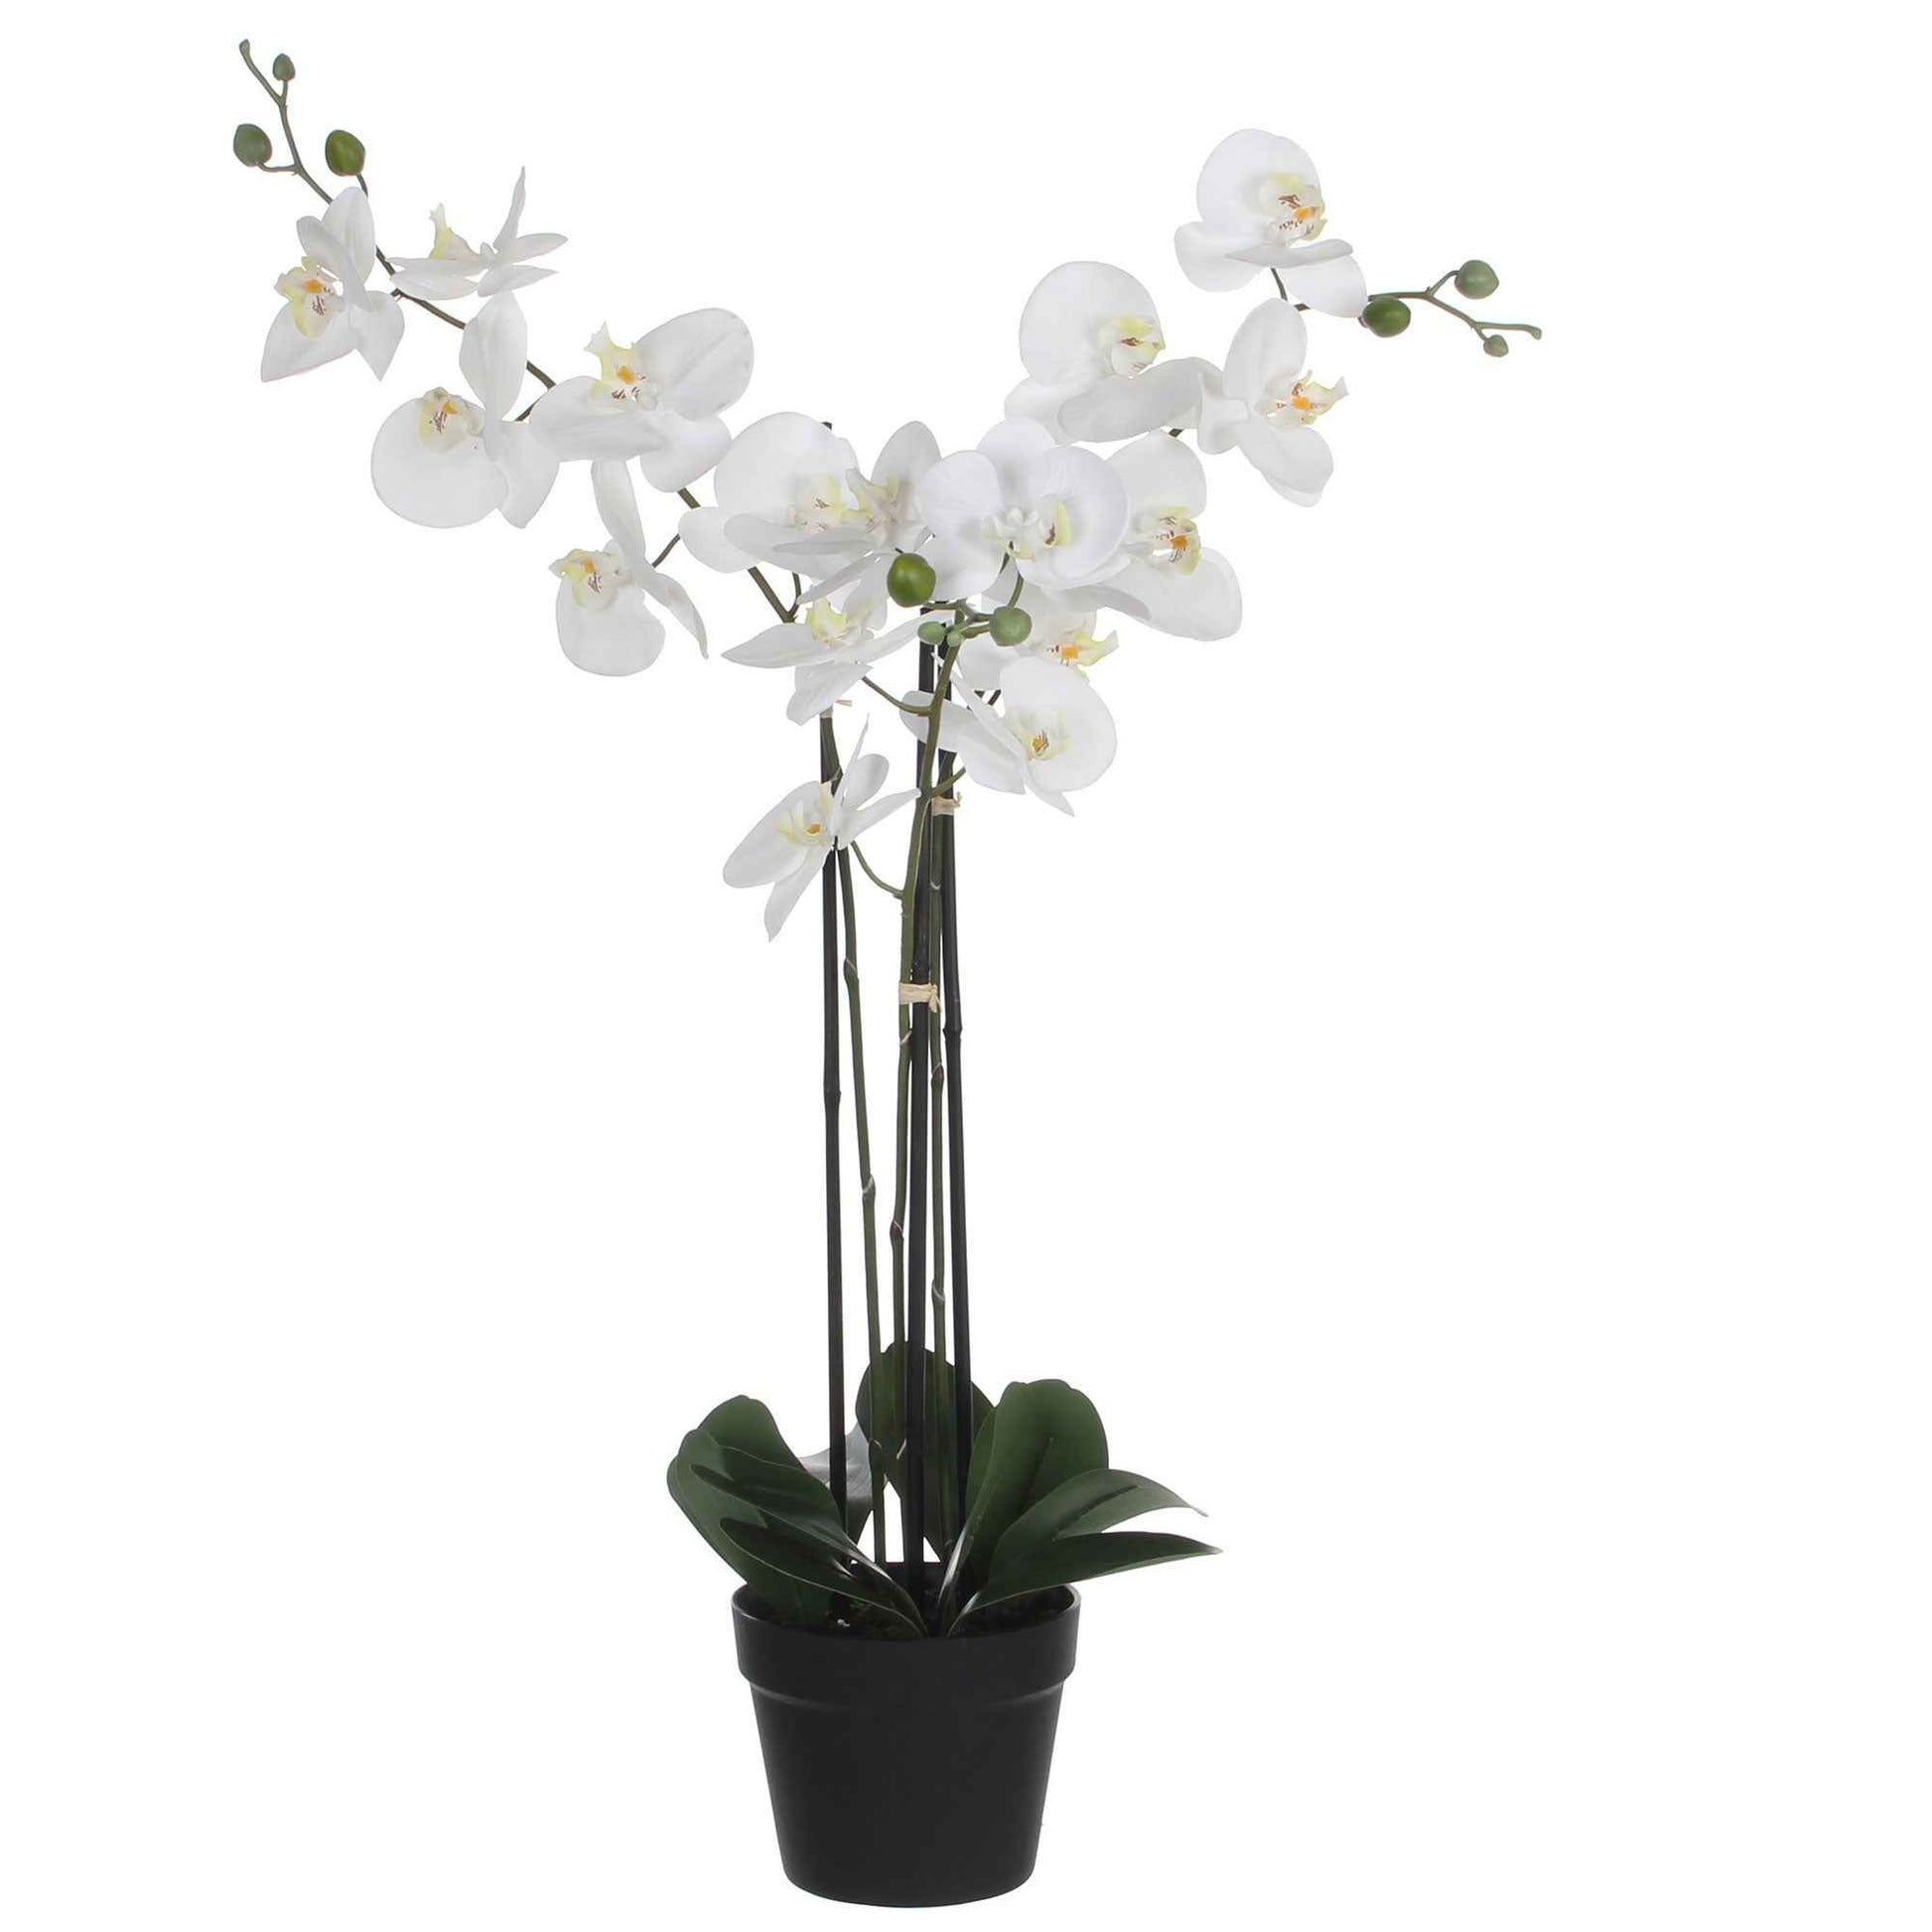 Plante artificielle Orchidée Phalaenopsis blanc Avec cache-pot rond en plastique - Plantes artificielles